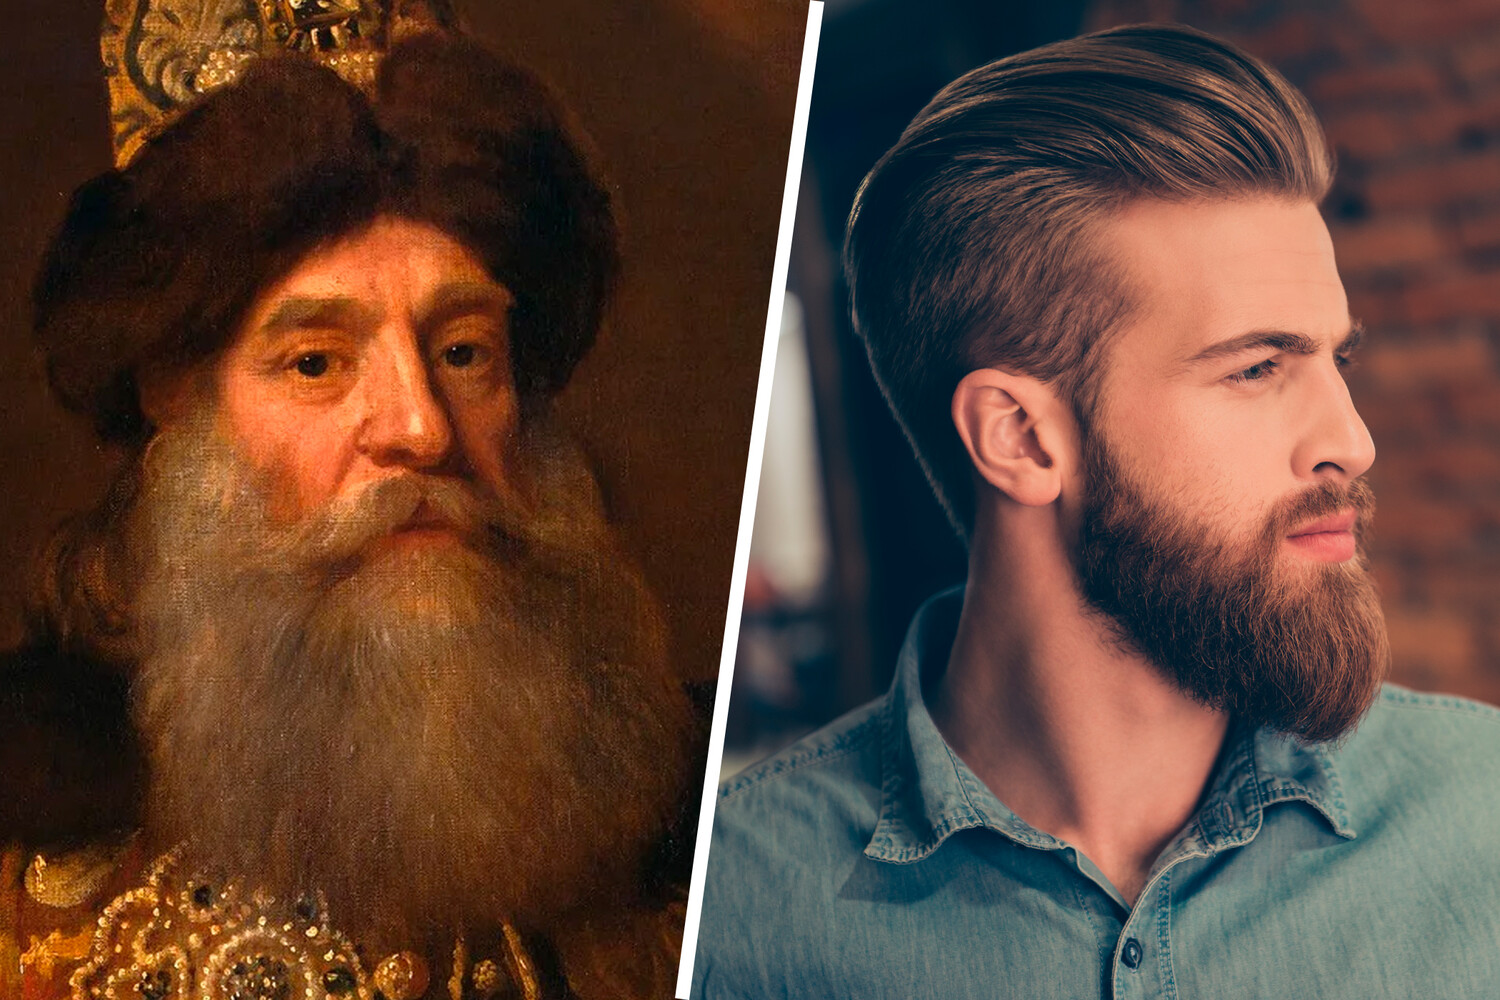 Борода без усов. 11 крутых стилей с фото - BeardBro